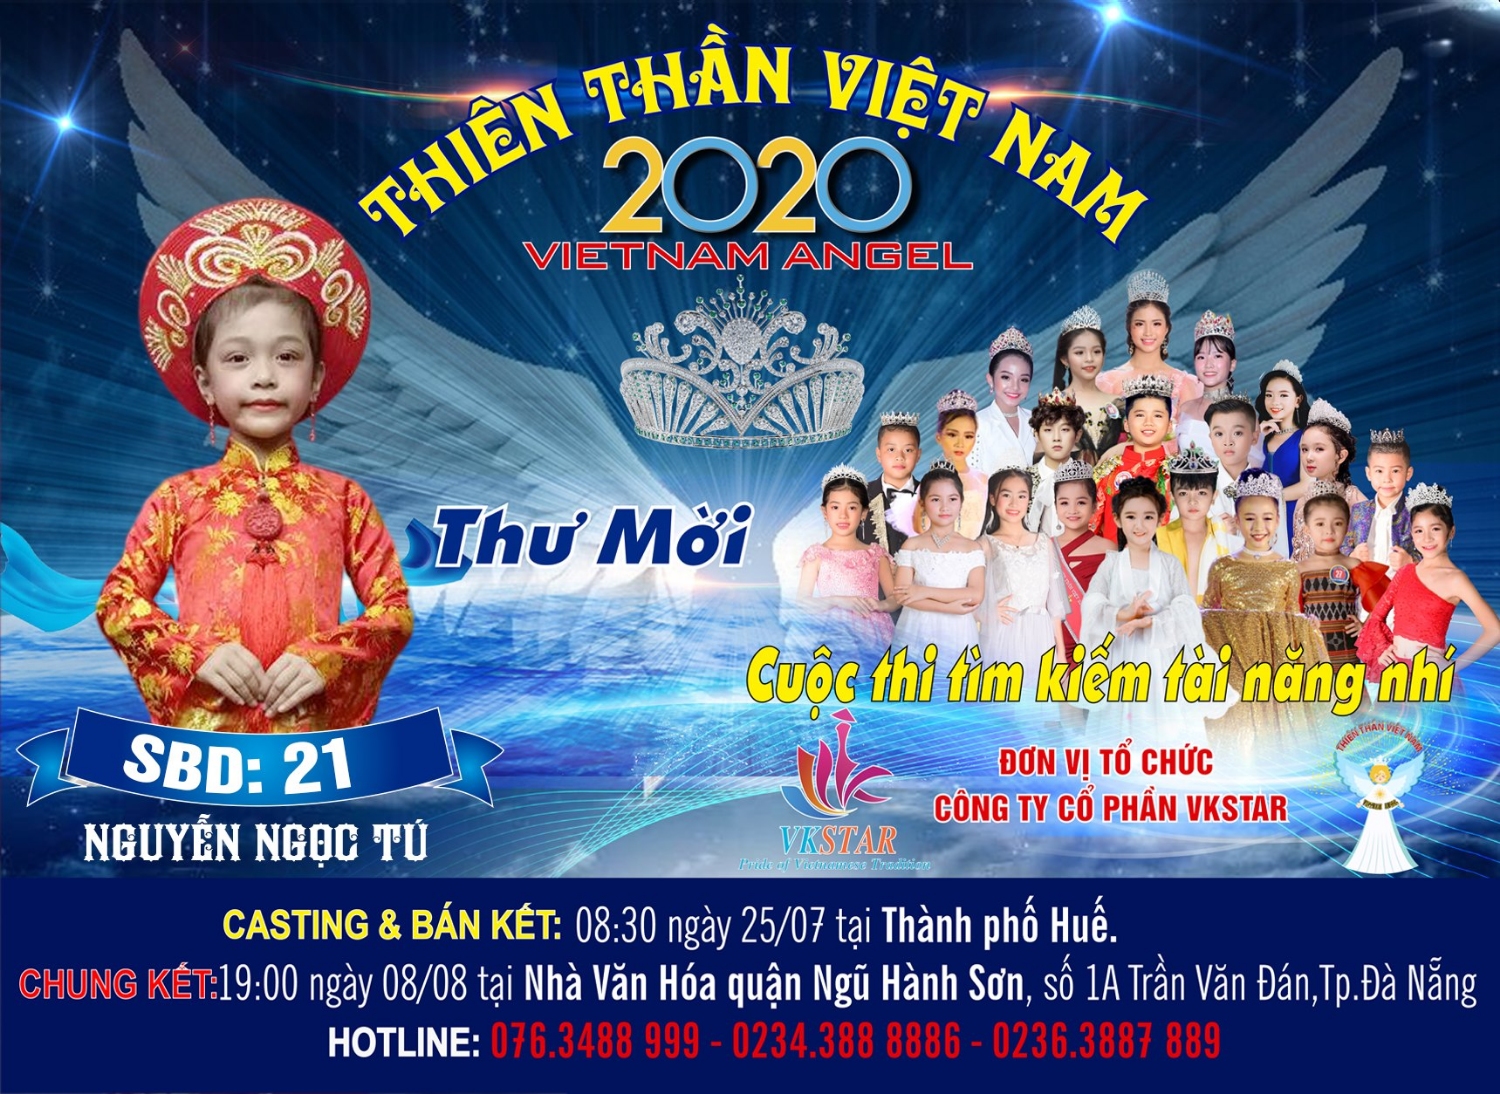 Thí sinh Nguyễn Ngọc Tú – SBD 21, đến từ Thành phố Huế